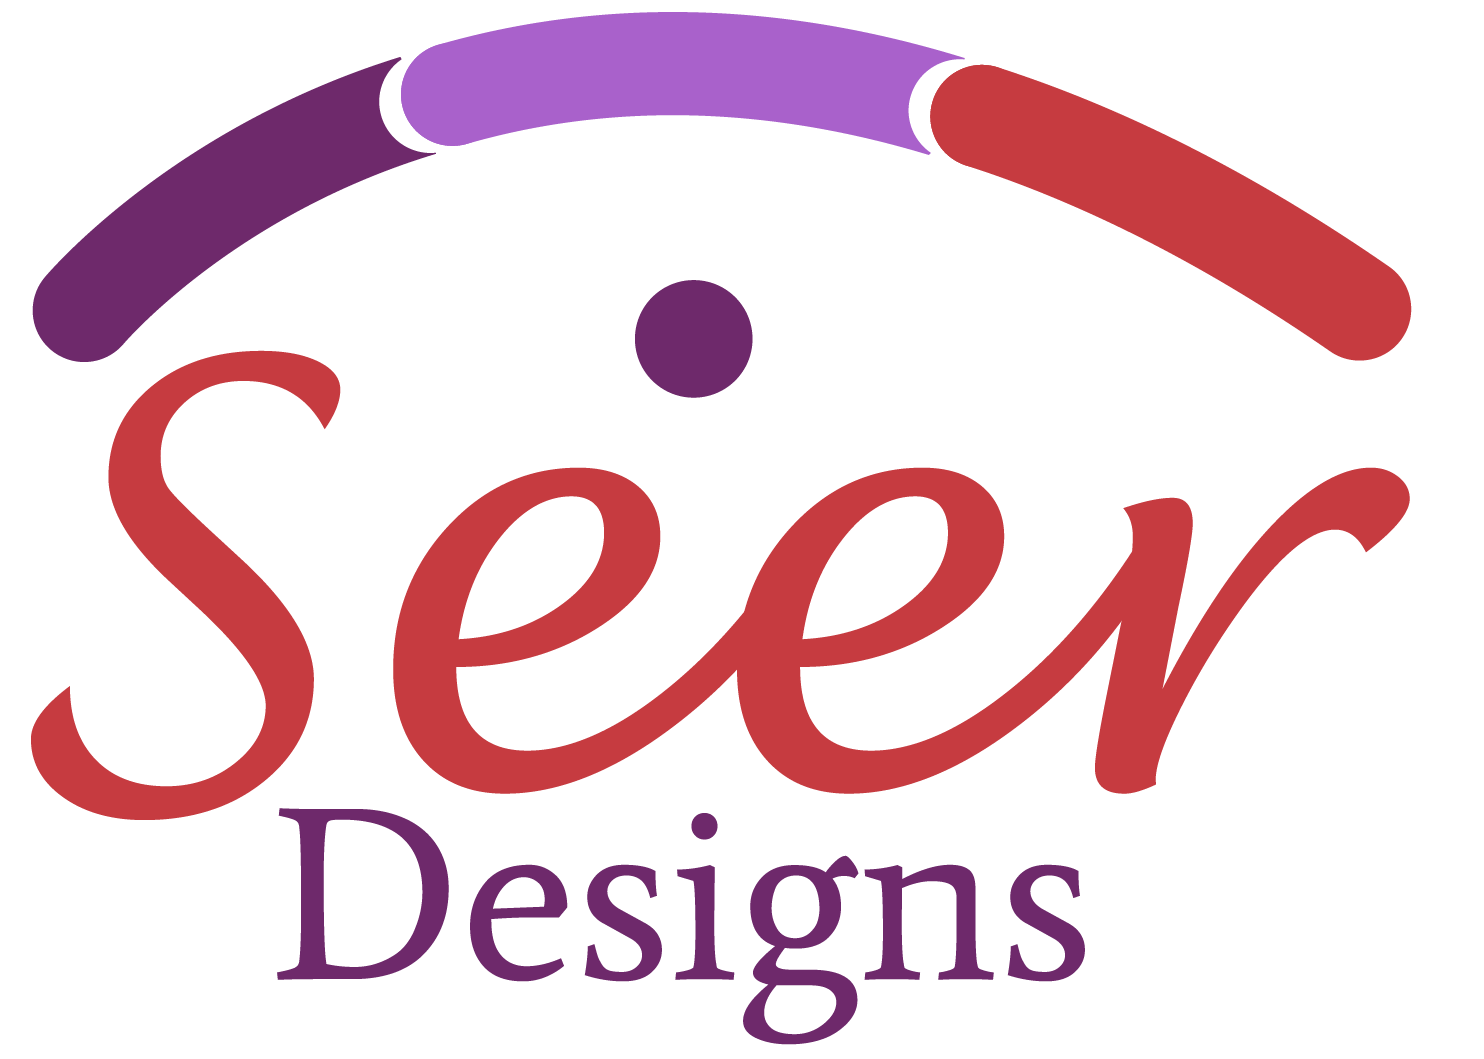 Seer Designs